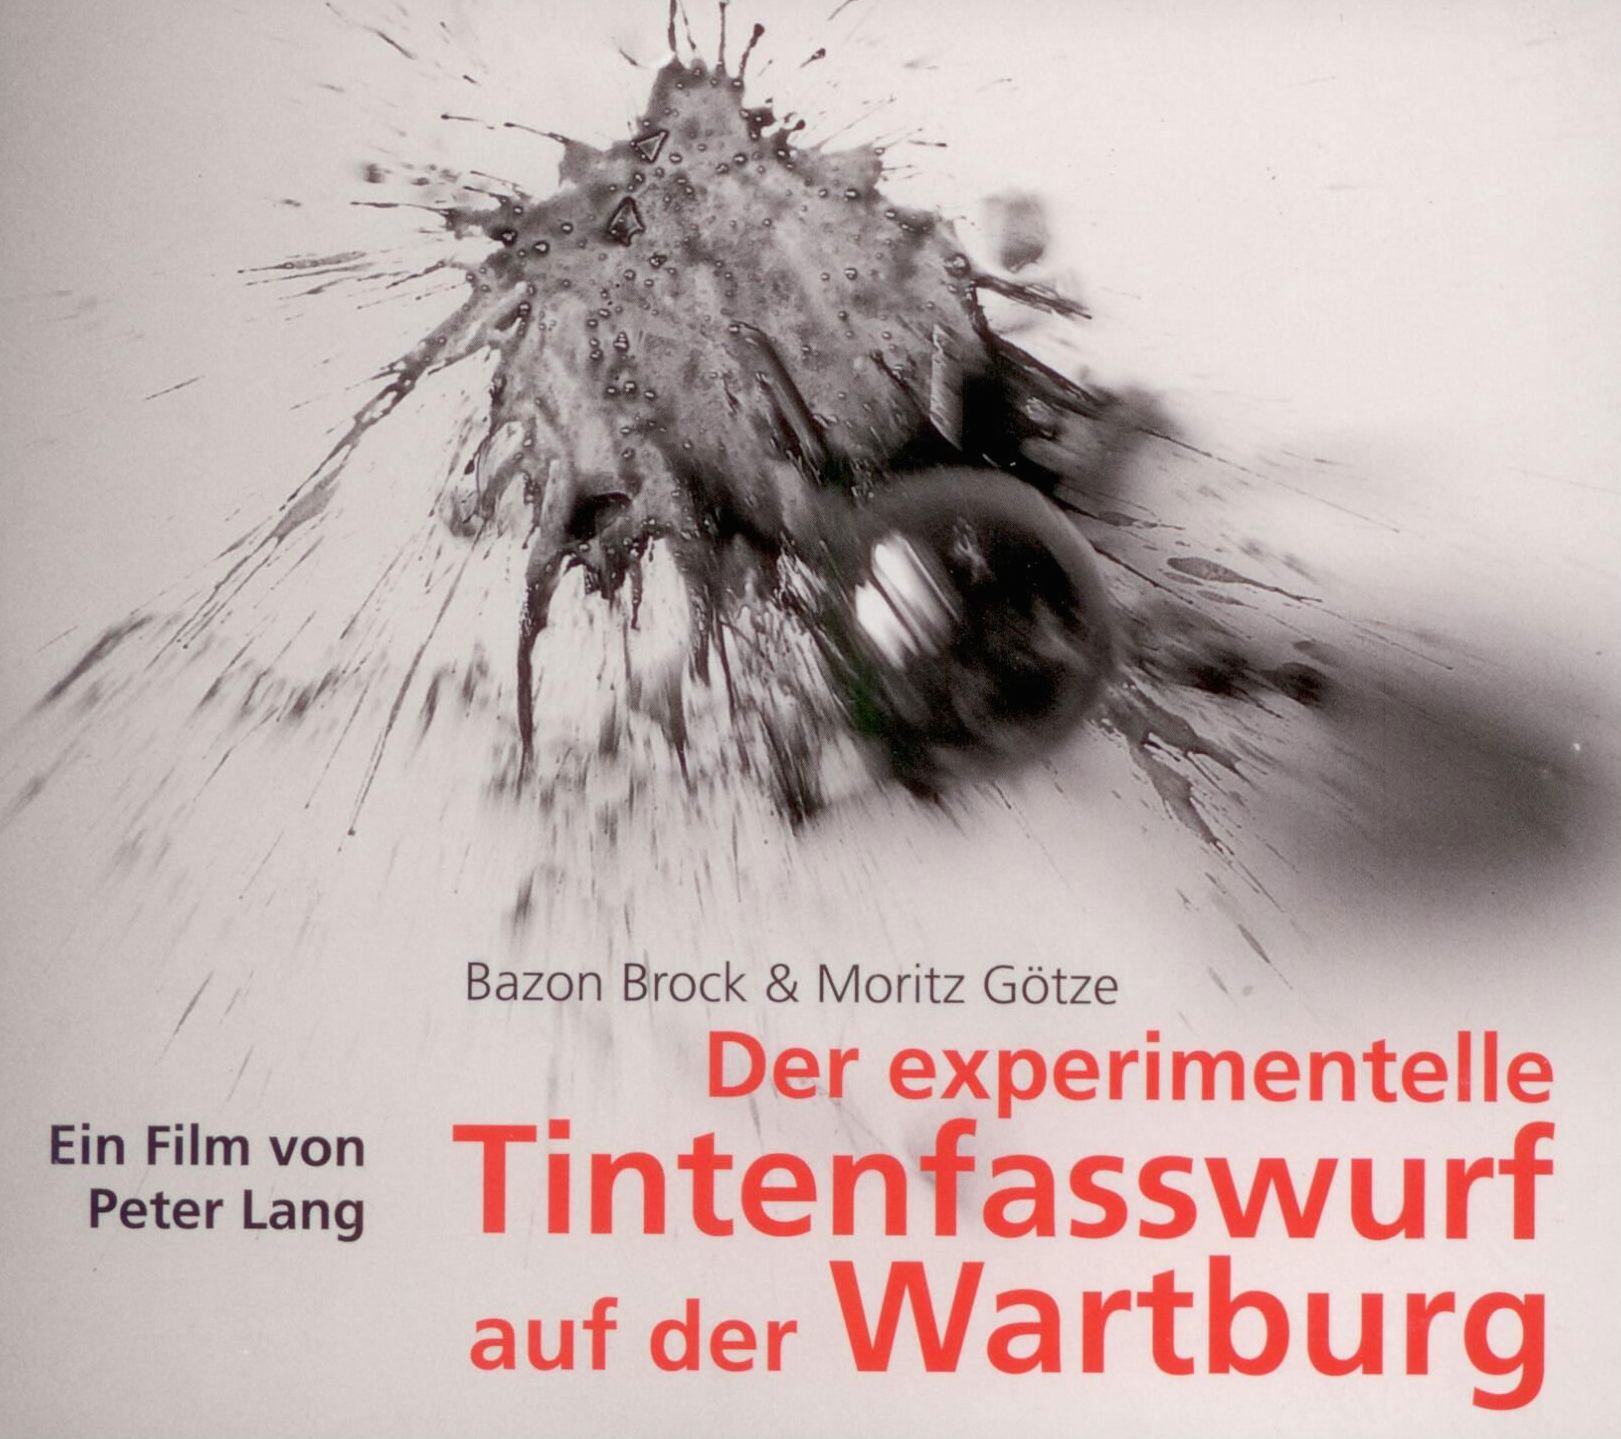 Bazon Brock & Moritz Götze: Der experimentelle Tintenfasswurf auf der Wartburg, Bild: Ein Film von Peter Lang, 10.11.2009. Halle/Saale: Hasenverlag, 2014.